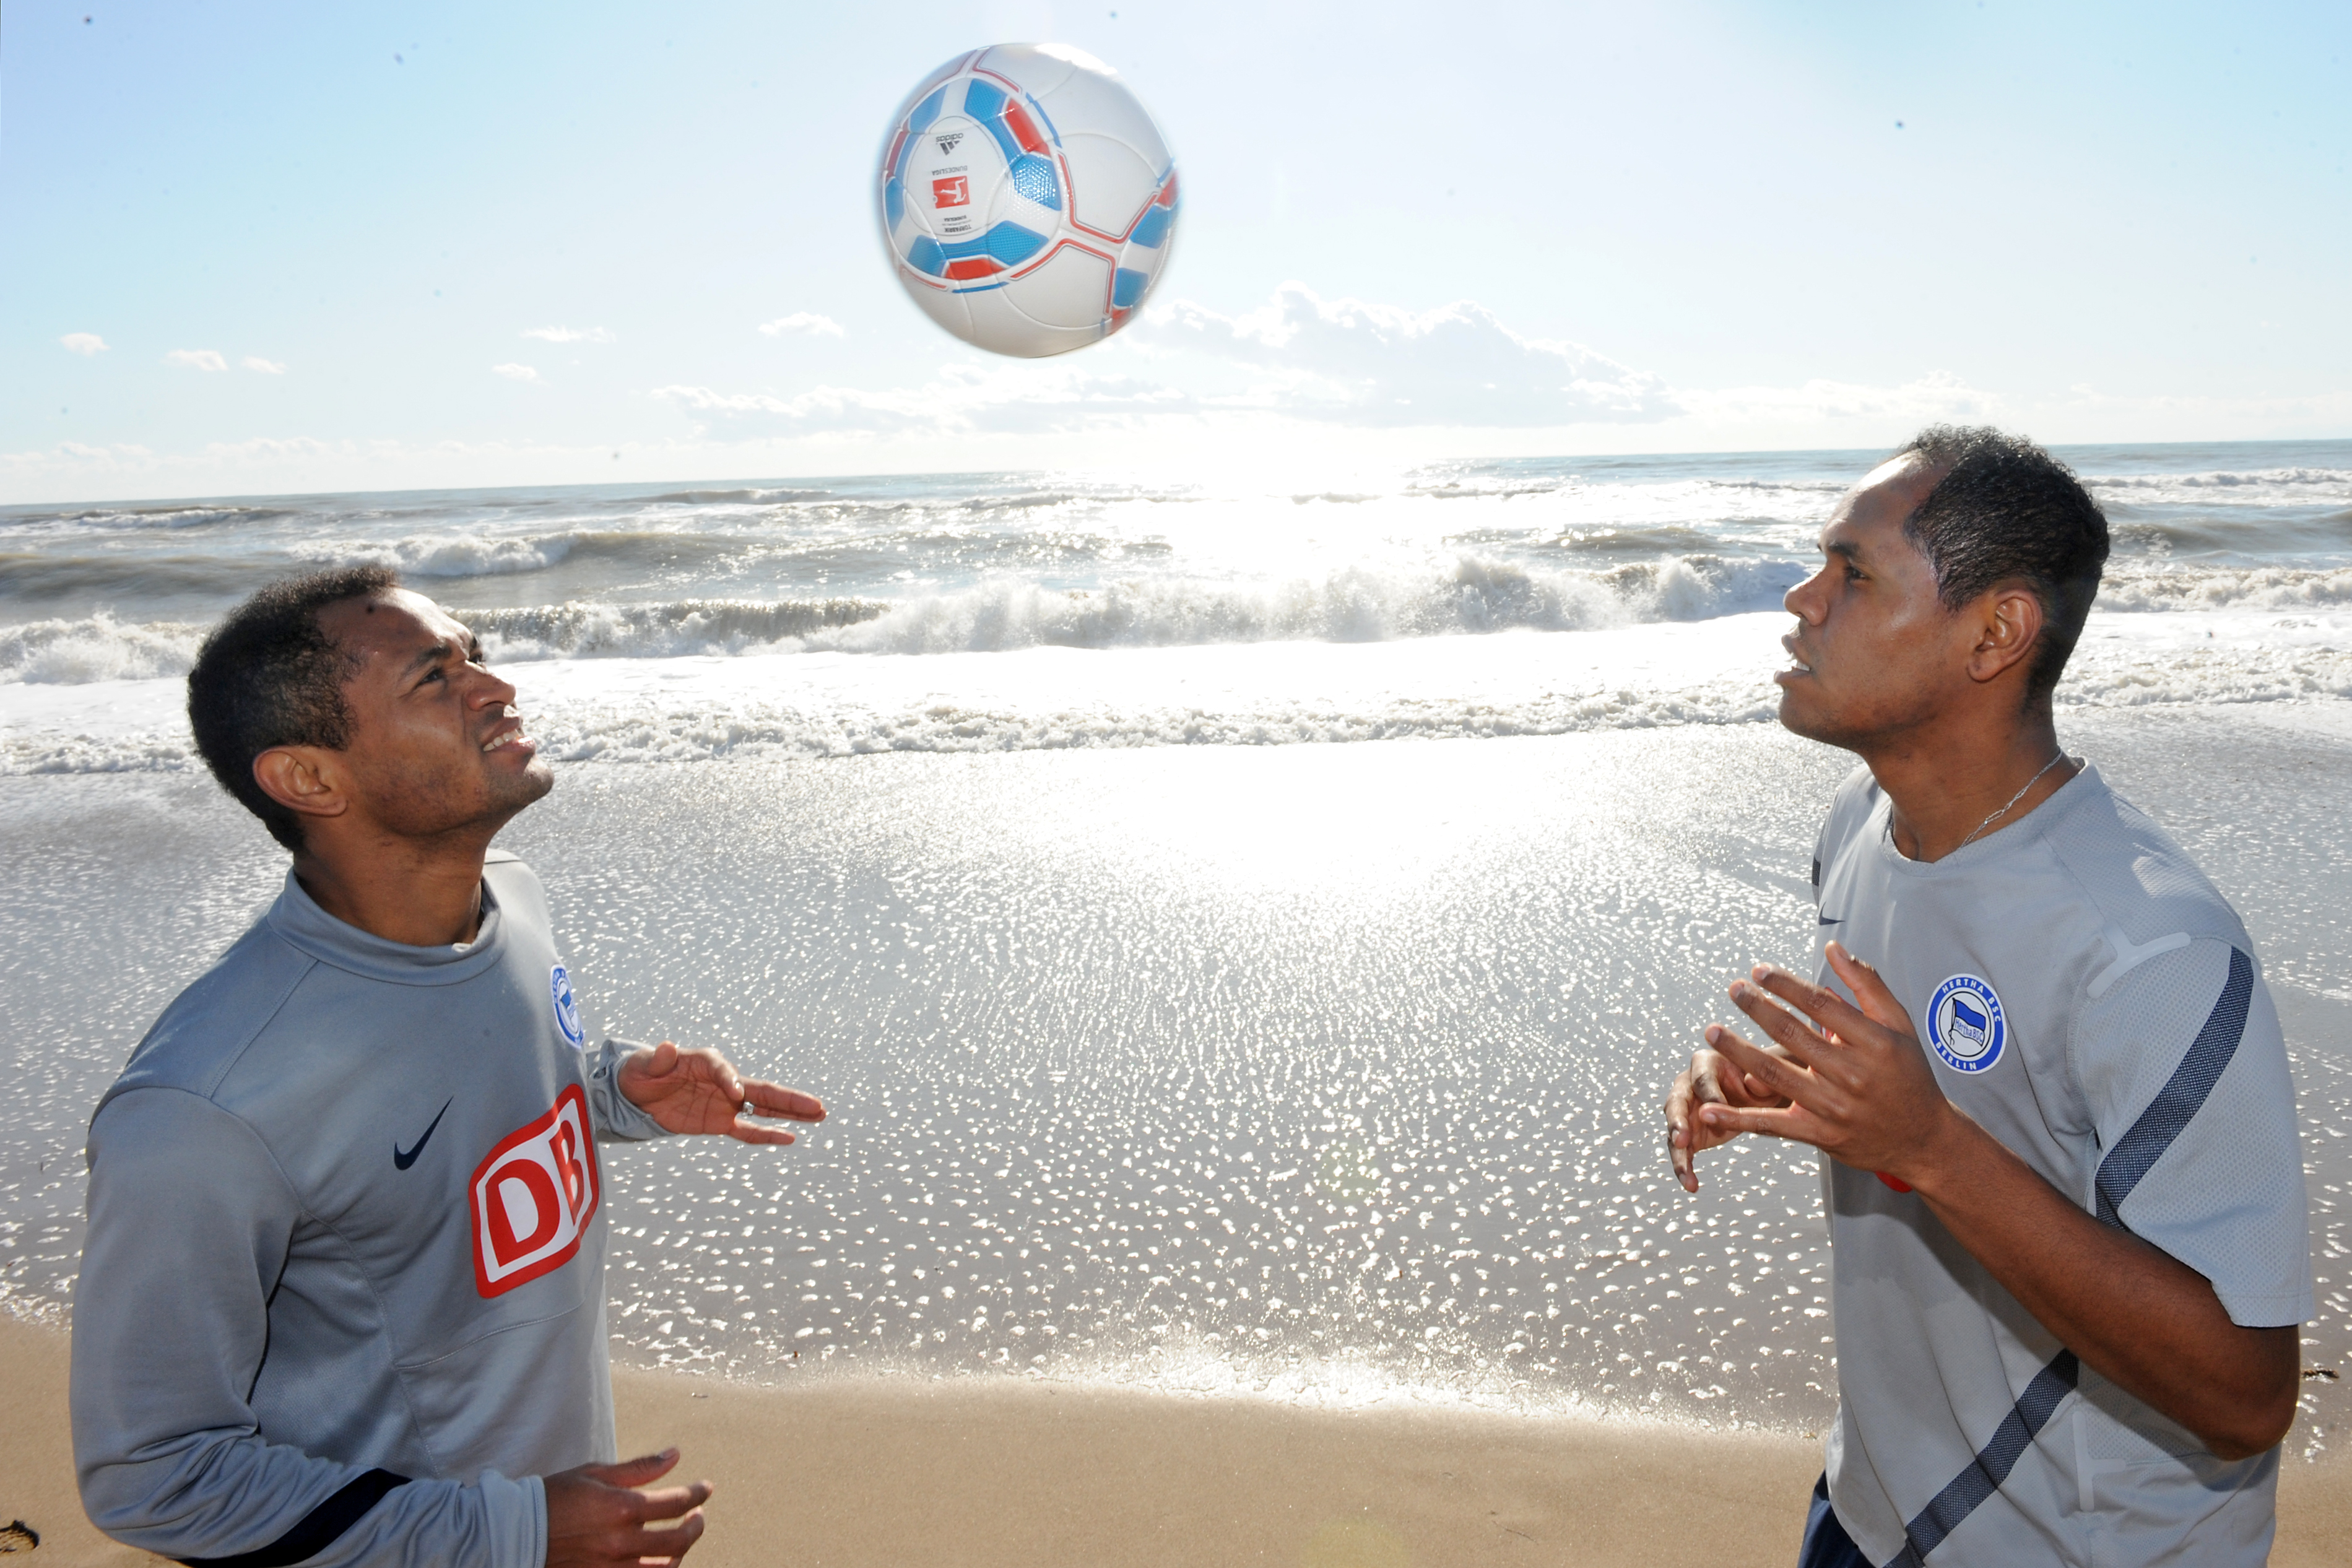 Raffael und Ronny zocken im Trainingslager in Belek mit dem Ball am Strand.